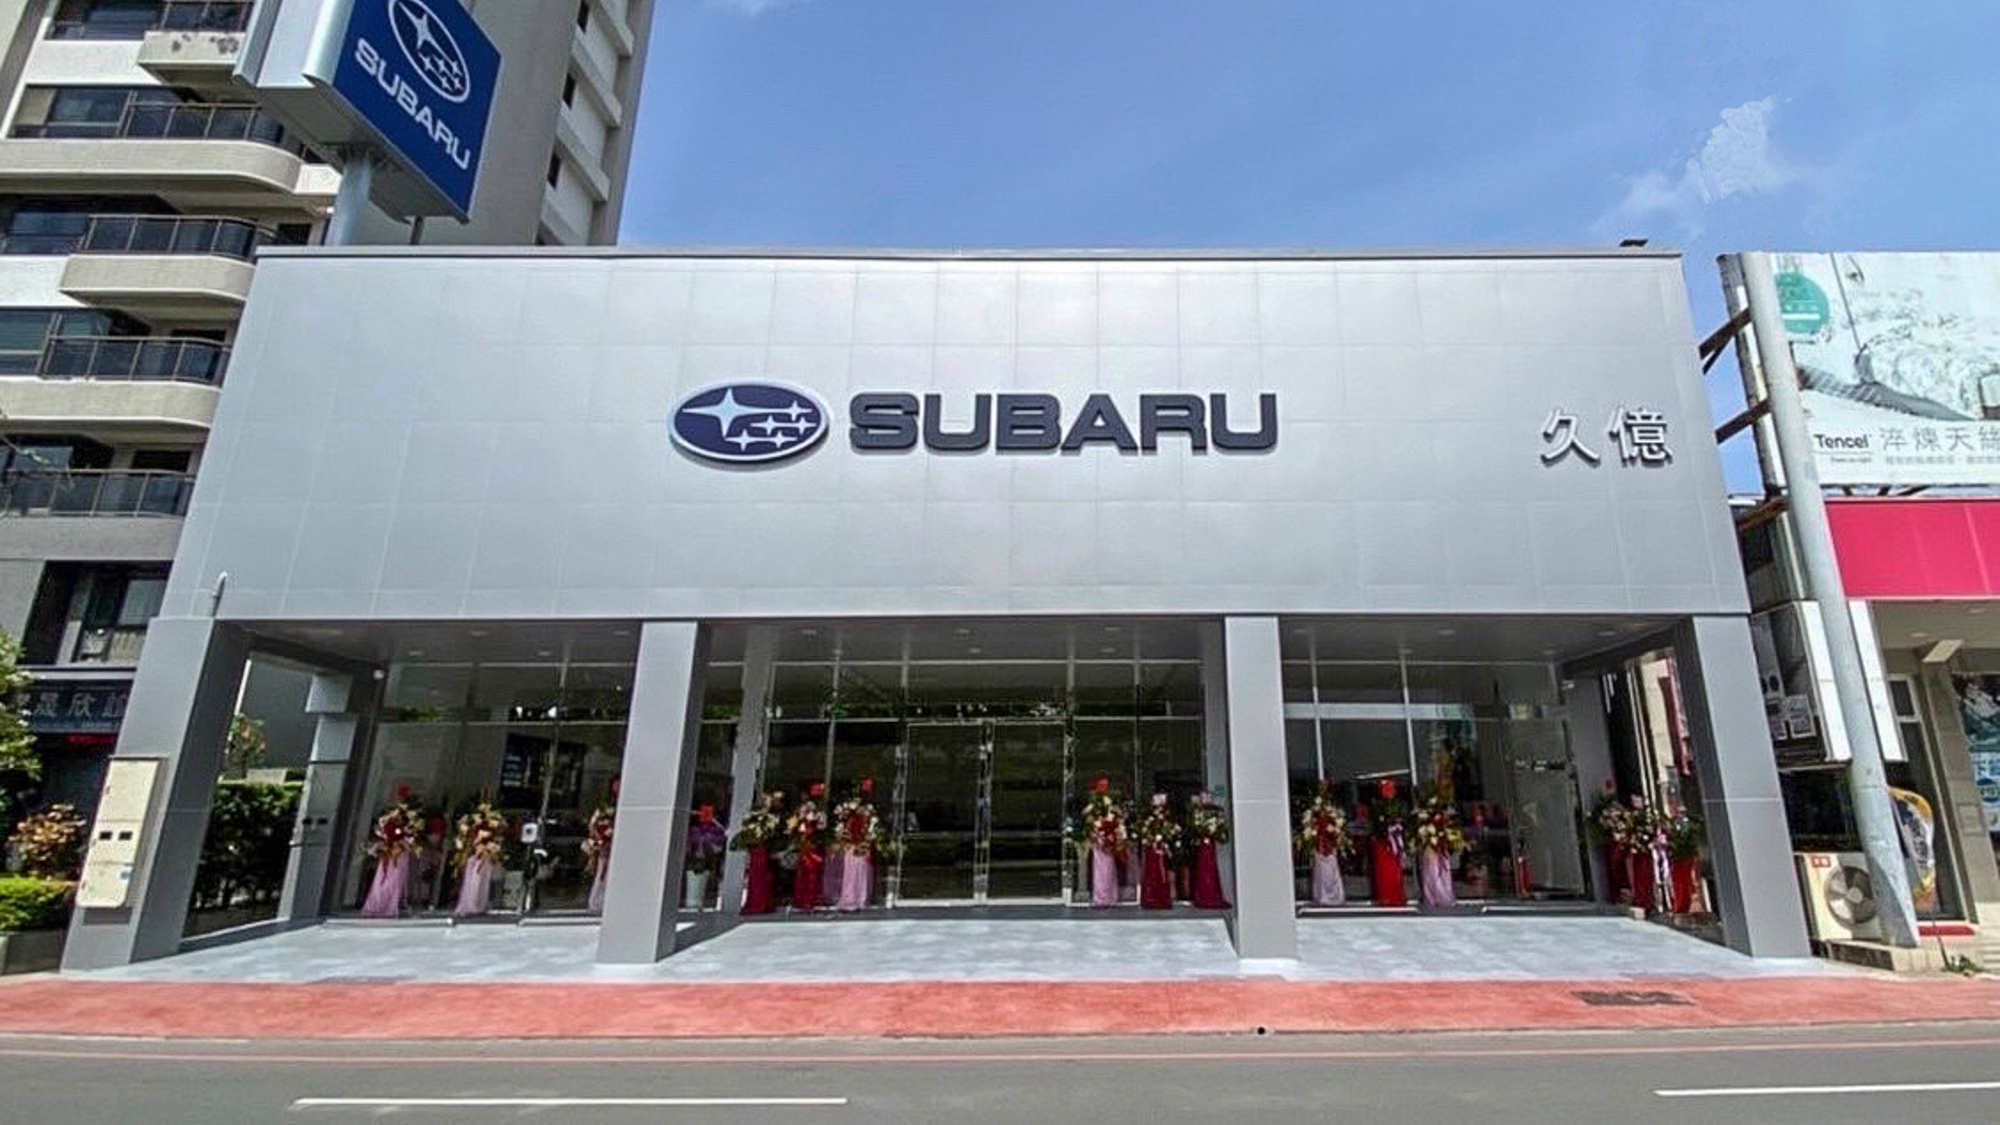 Subaru 久億台南展示中心新開幕